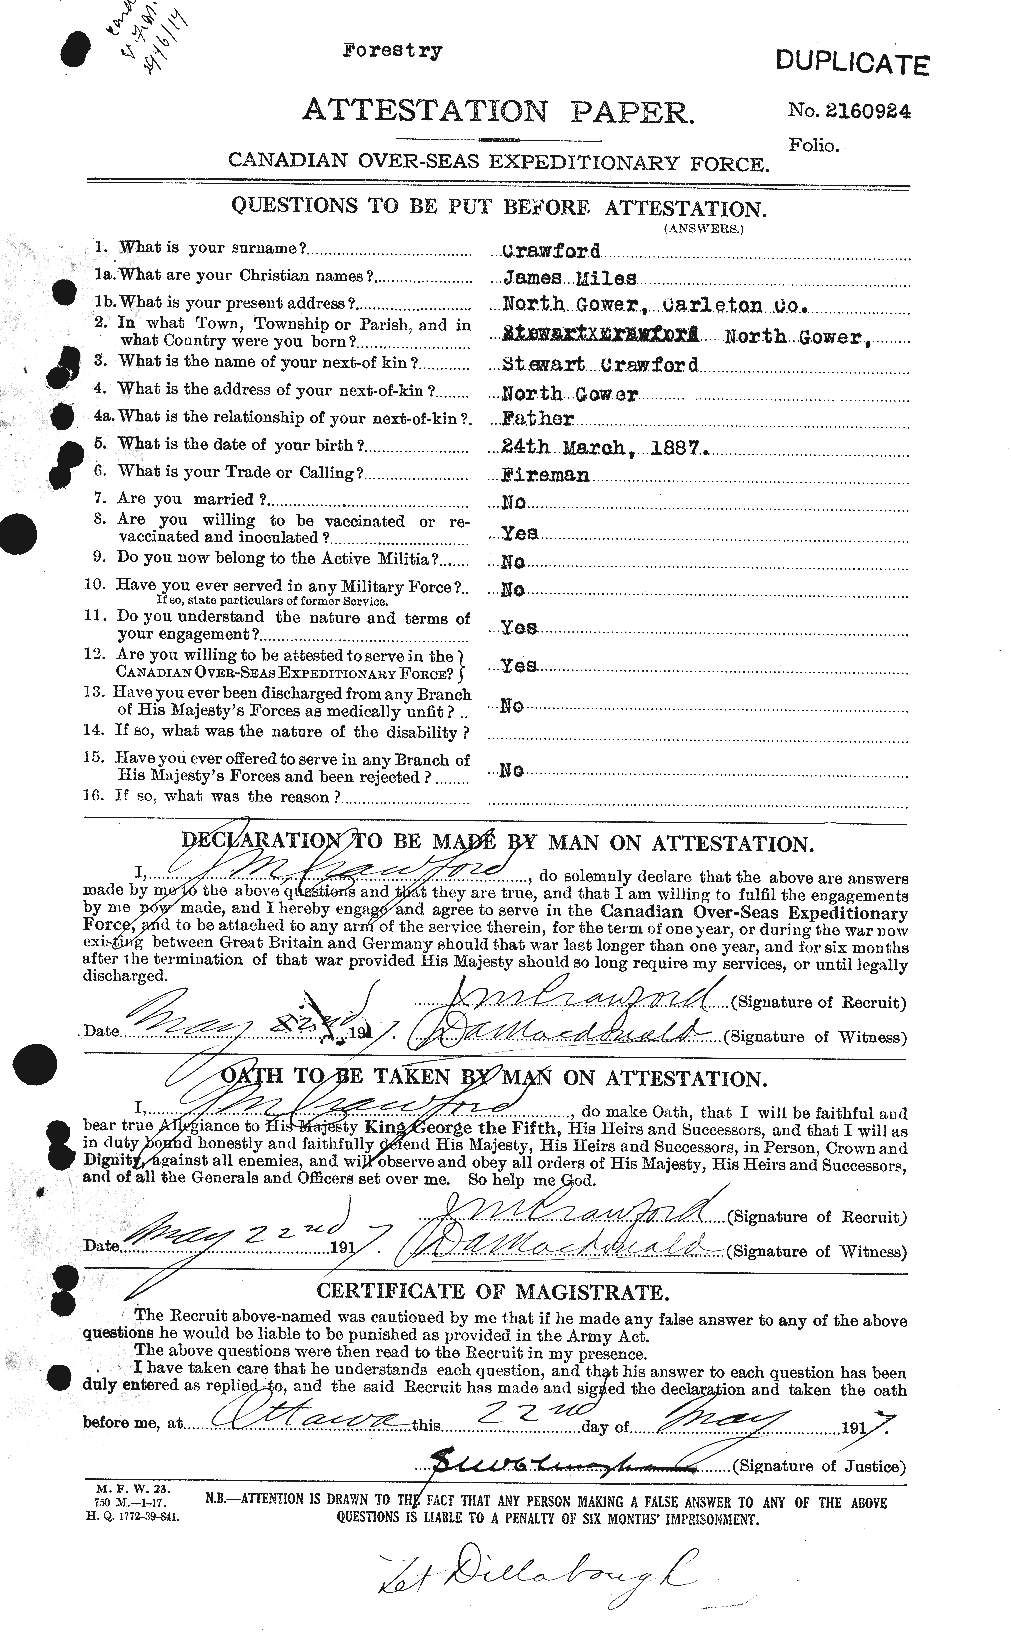 Dossiers du Personnel de la Première Guerre mondiale - CEC 062474a